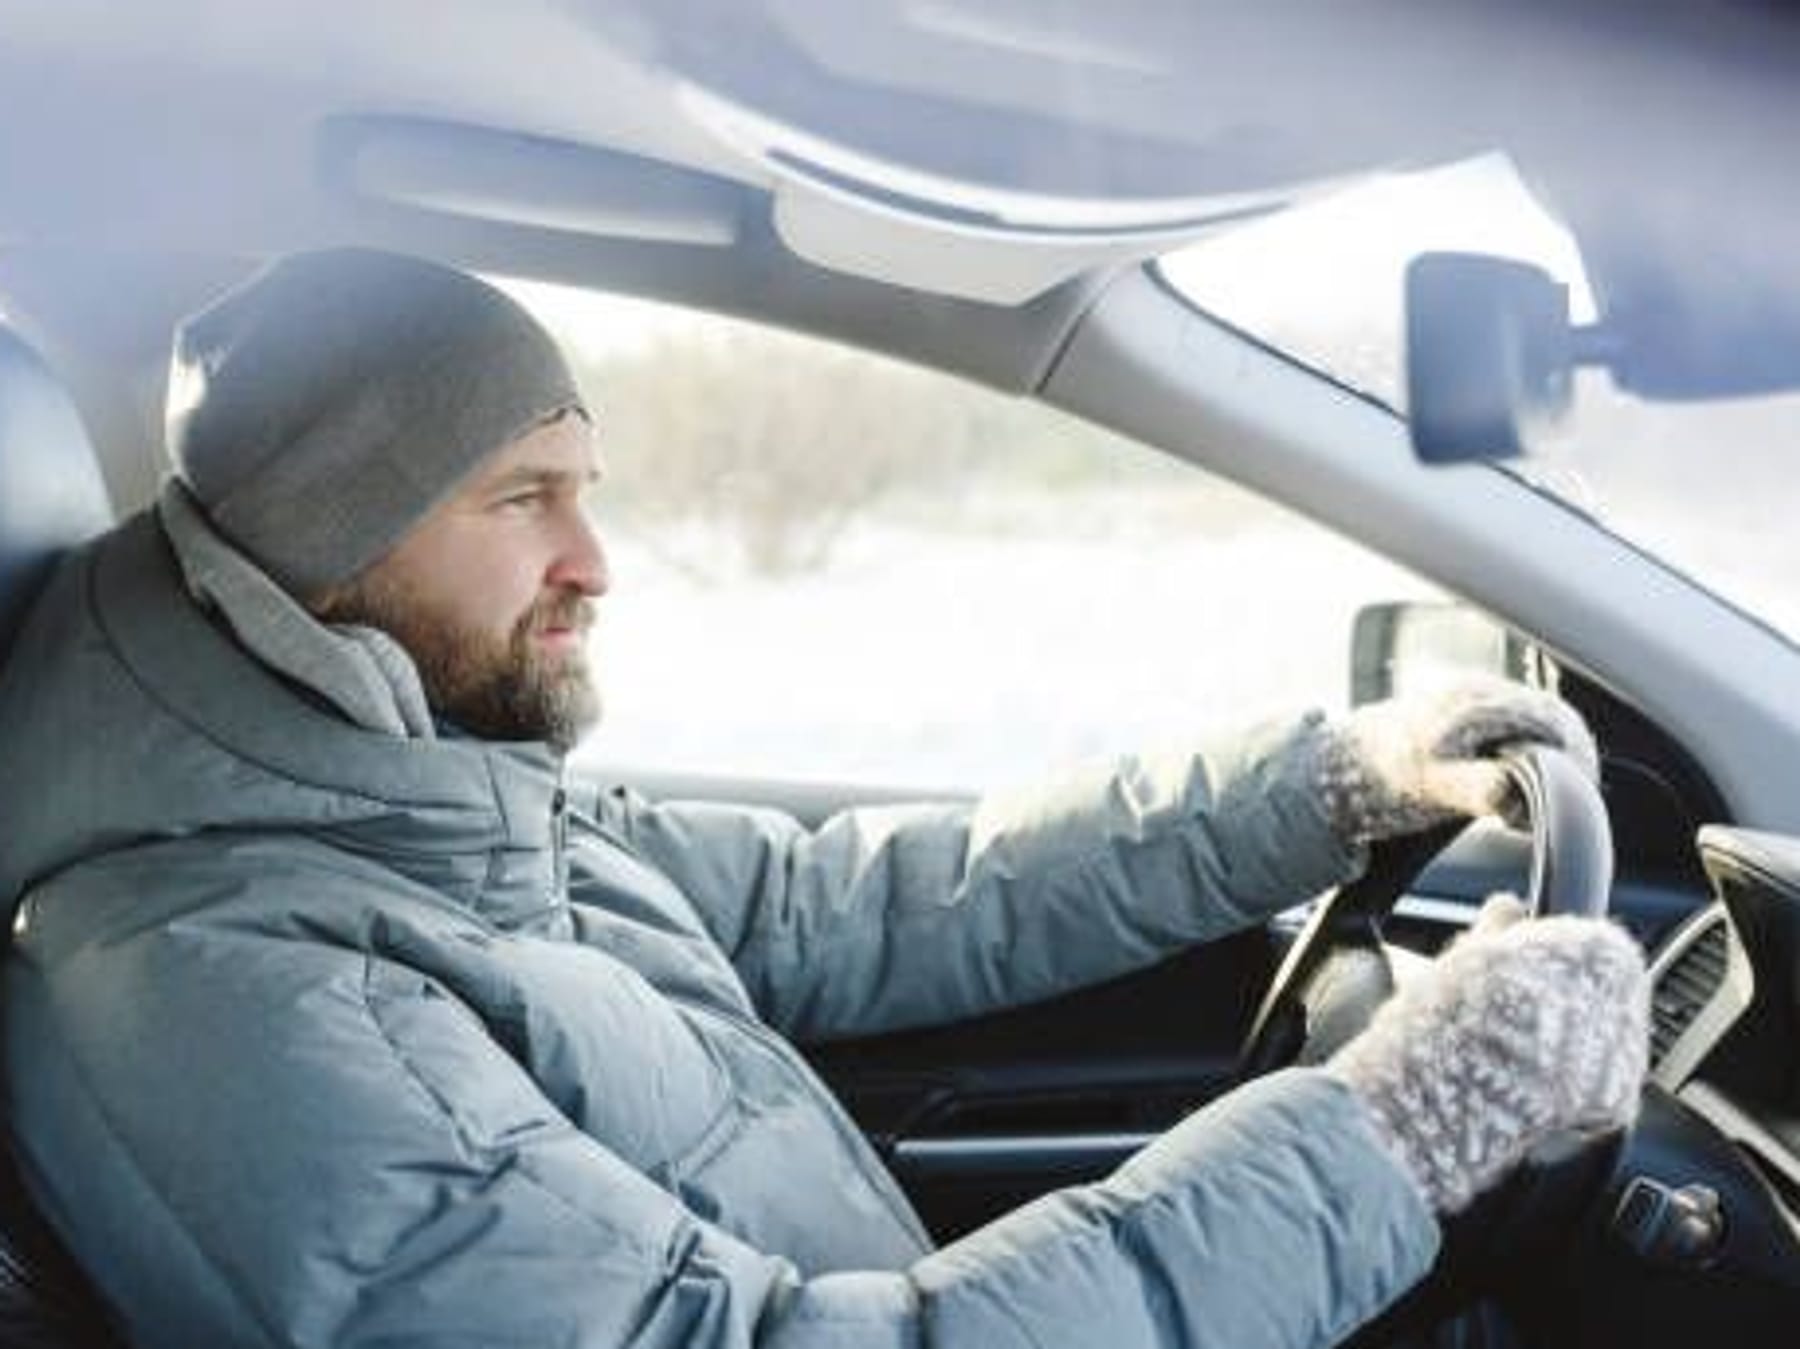 https://images.t-online.de/2024/01/Vdy1iOmEWIhn/77x32:459x344/fit-in/1800x0/auto-fahren-im-winter-ist-die-sitzheizung-ein-risikofaktor-fuer-impotenz.jpg